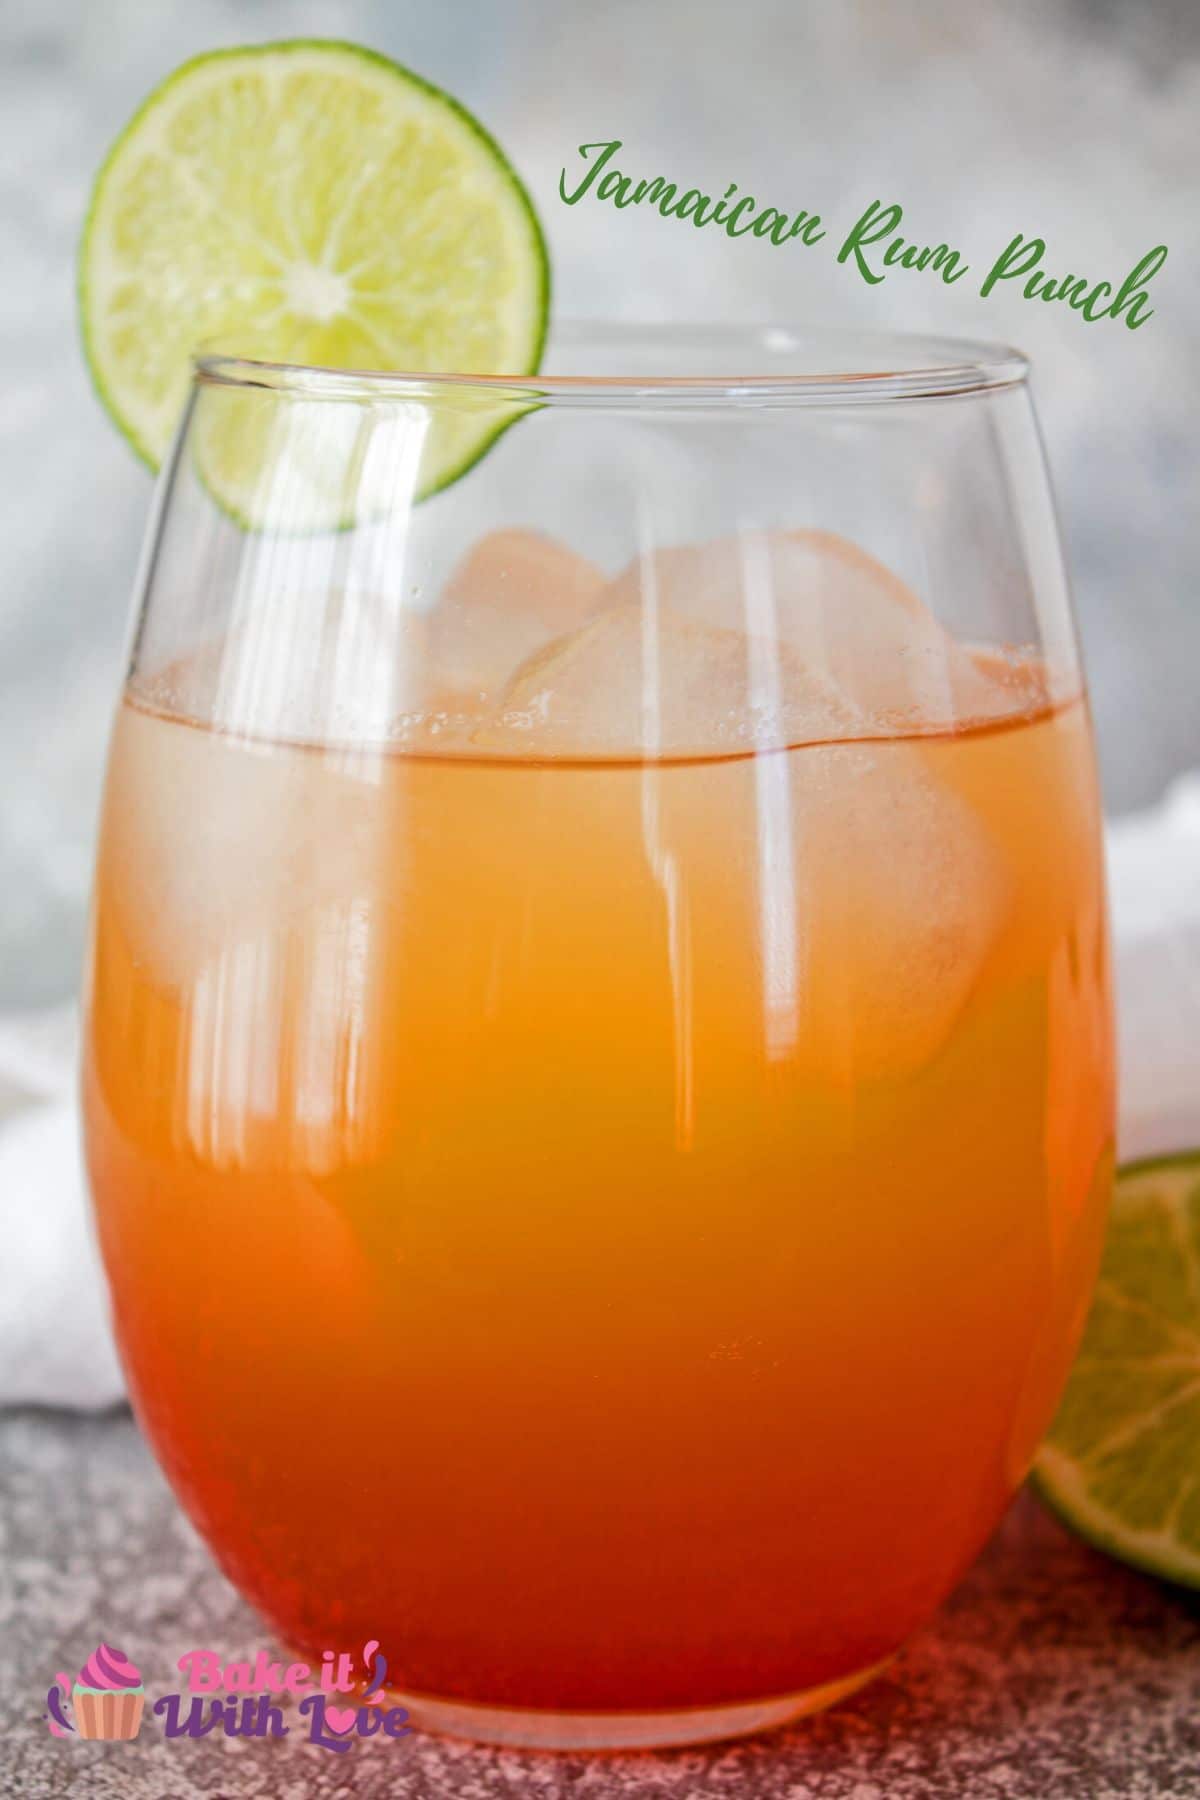 Il Jamaican Rum Punch a base di frutta, deliziosamente rinfrescante, è il preferito dai tropici per tutti!